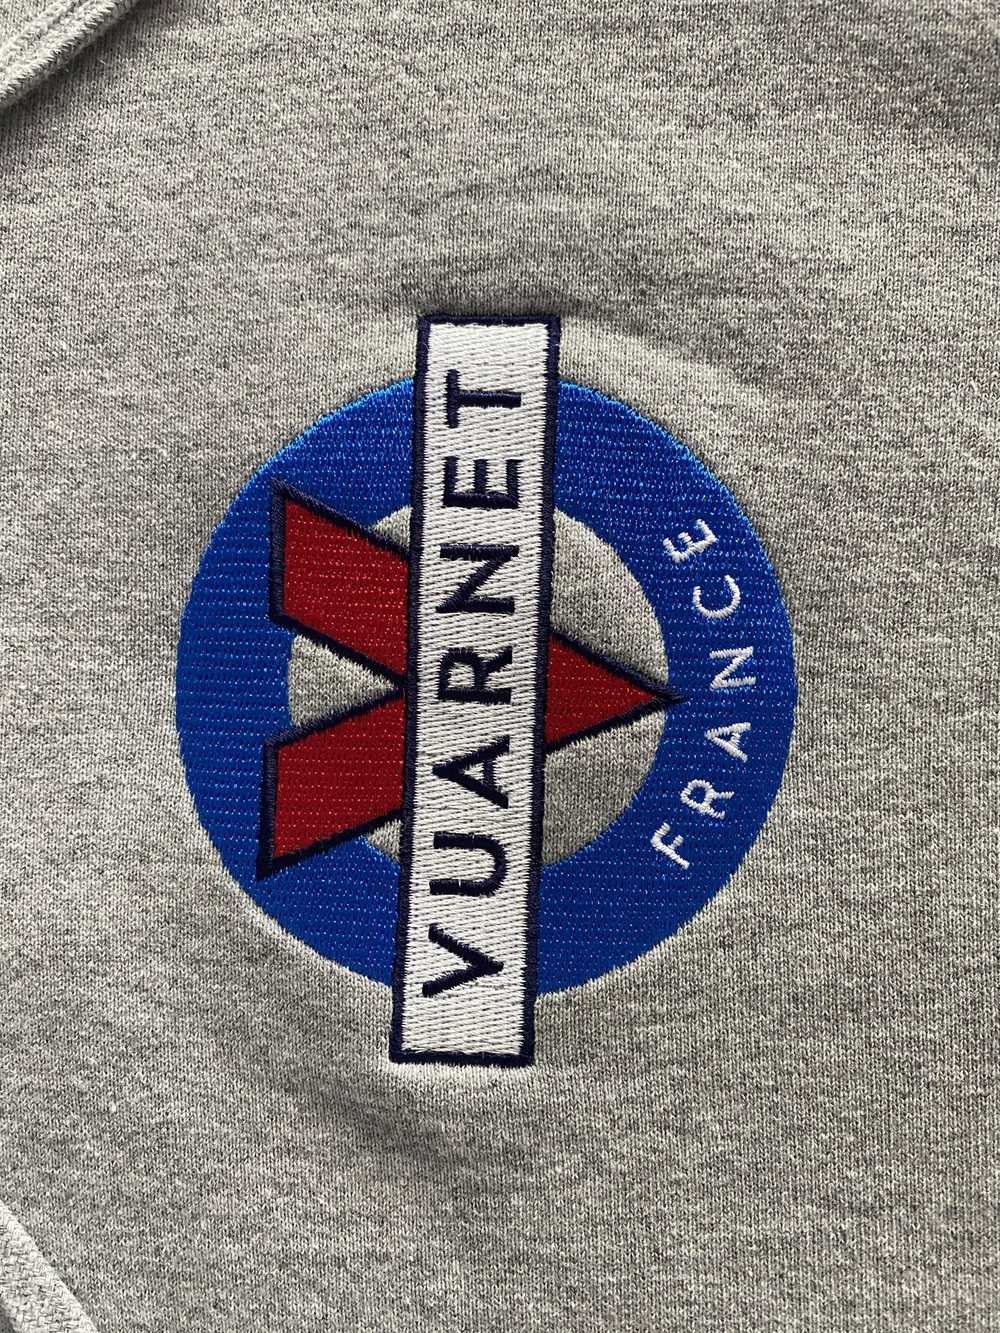 Vuarnet Vuarnet France Embroidered Logo Hoodie Gr… - image 5